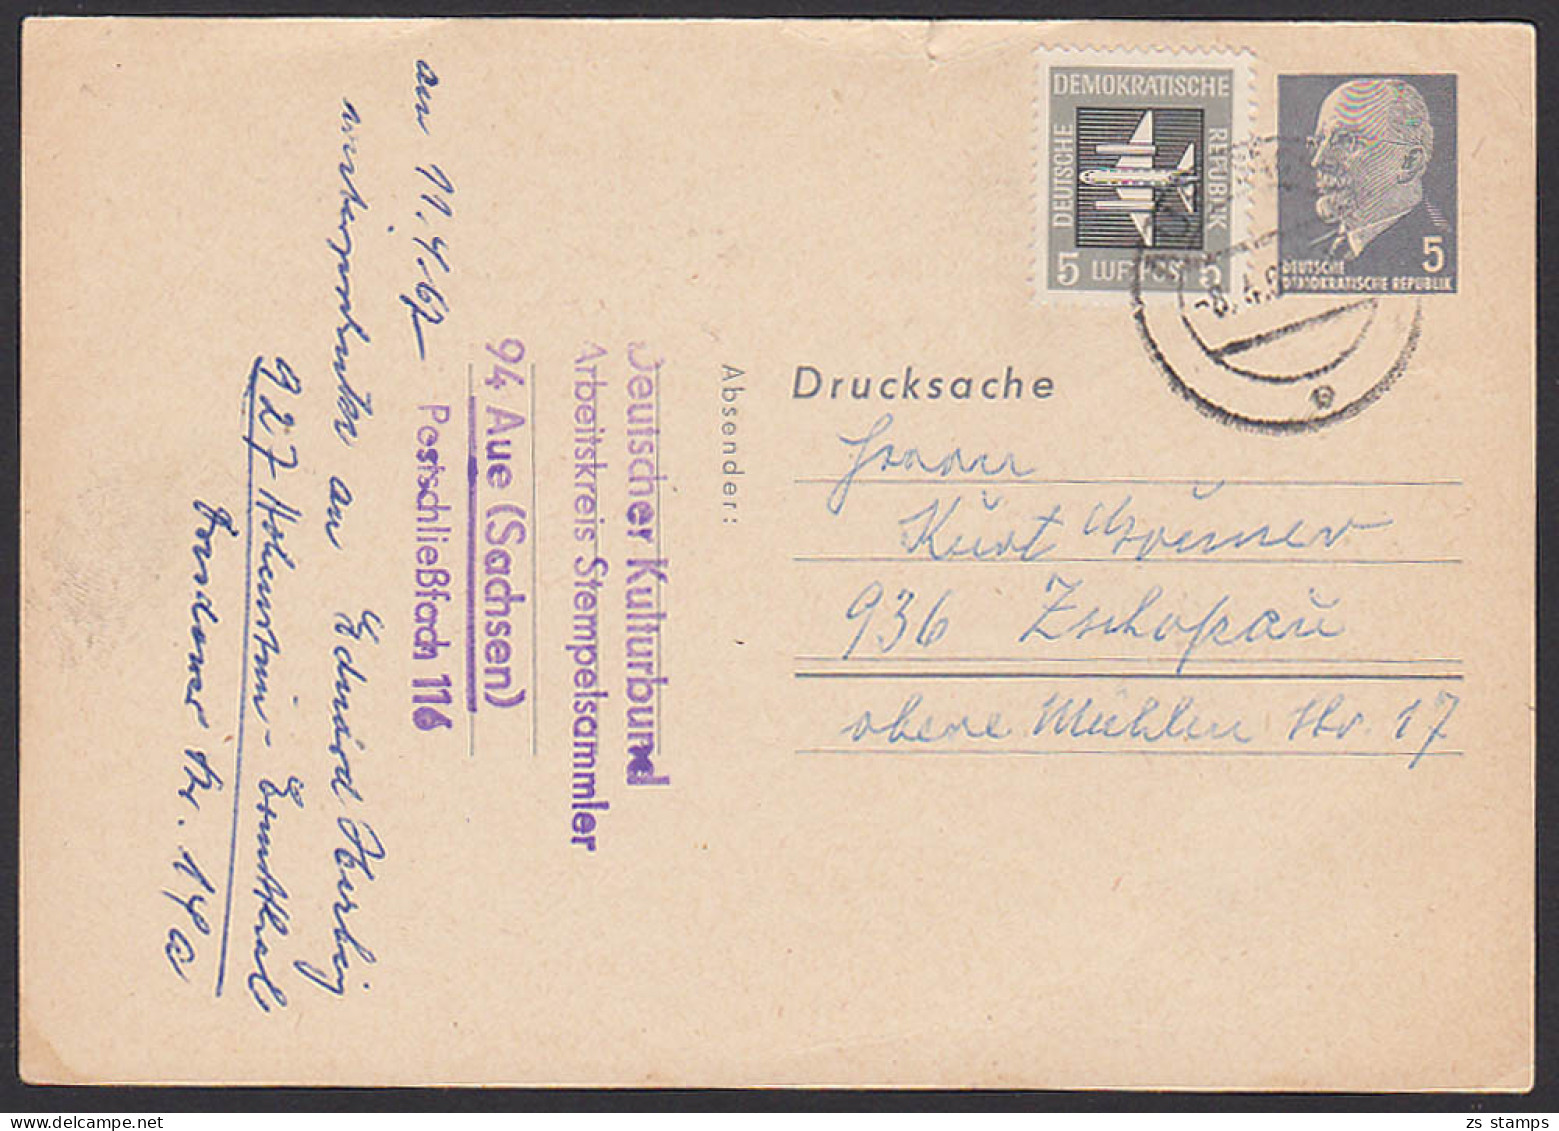 Aue Walter Ulbricht 5 Pf. Ganzsache Mit Zusatzfrankatur Privatganzsache Blanko PP7/1a, 8.4.67 - Postcards - Used